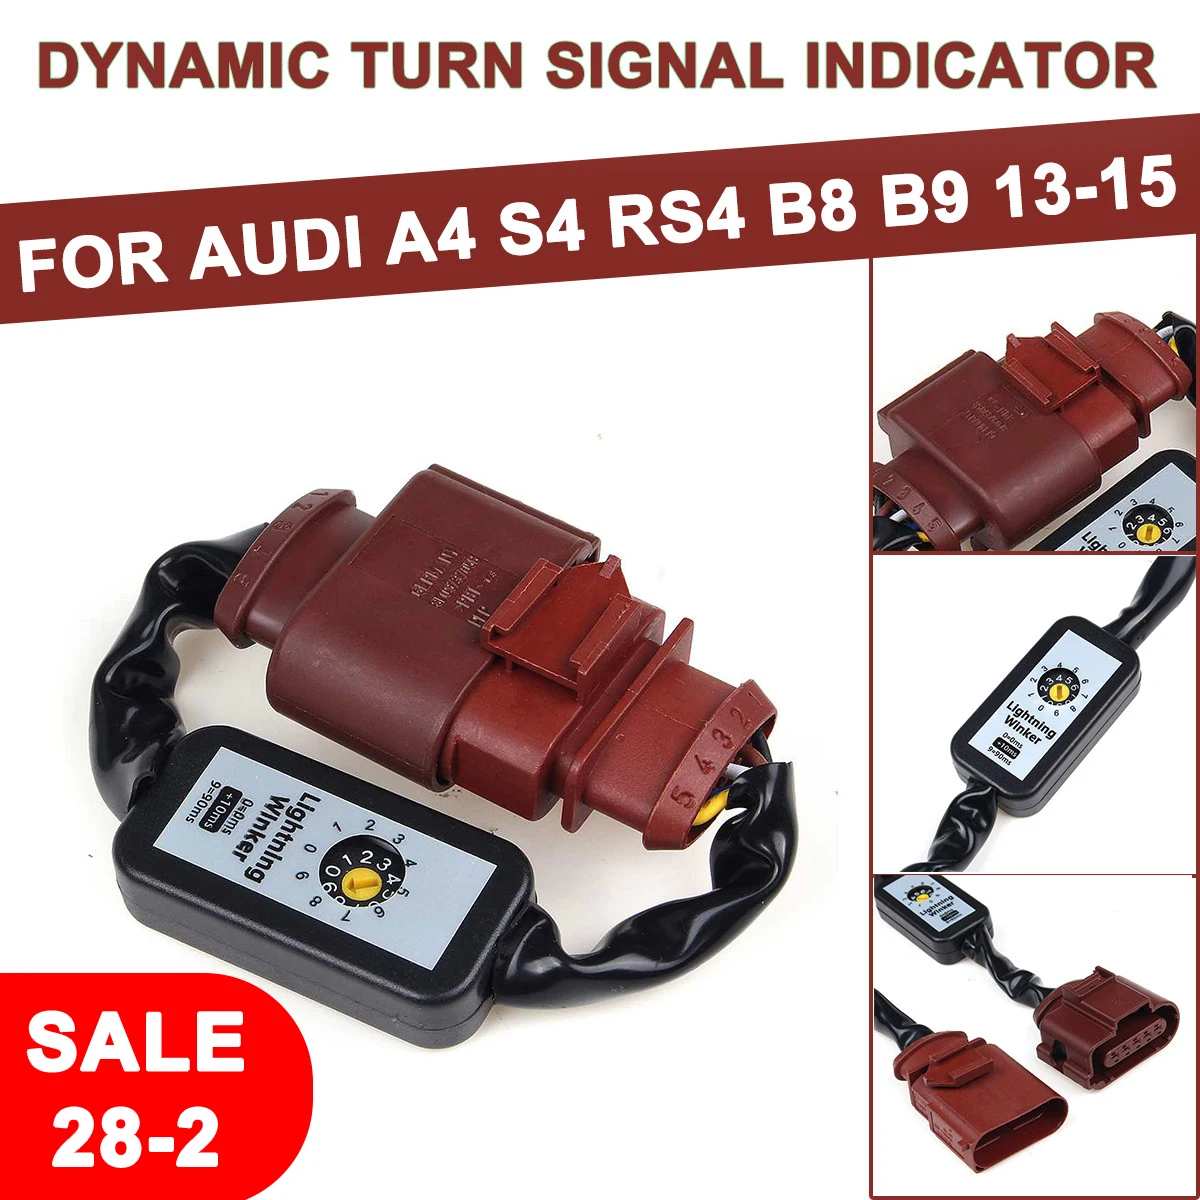 

Светодиодный кабель для дополнительного модуля заднего фонаря, Динамический указатель поворота для Audi A4 S4 RS4 B8 B9 2010 2011 2012 2013 2015 2014-2016